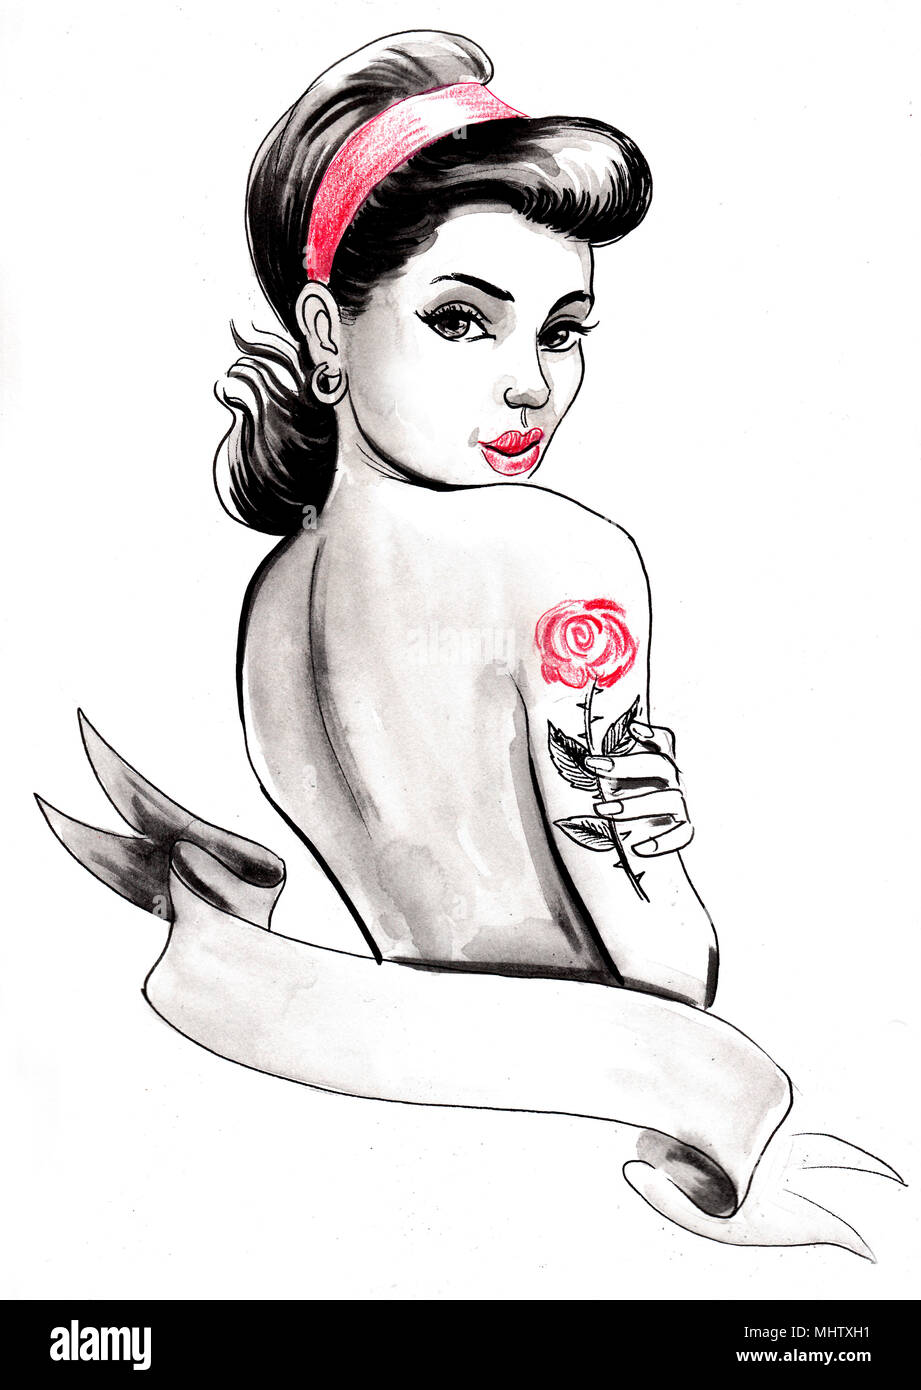 Jolie femme pin-up avec une rose tatouée sur son épaule Banque D'Images